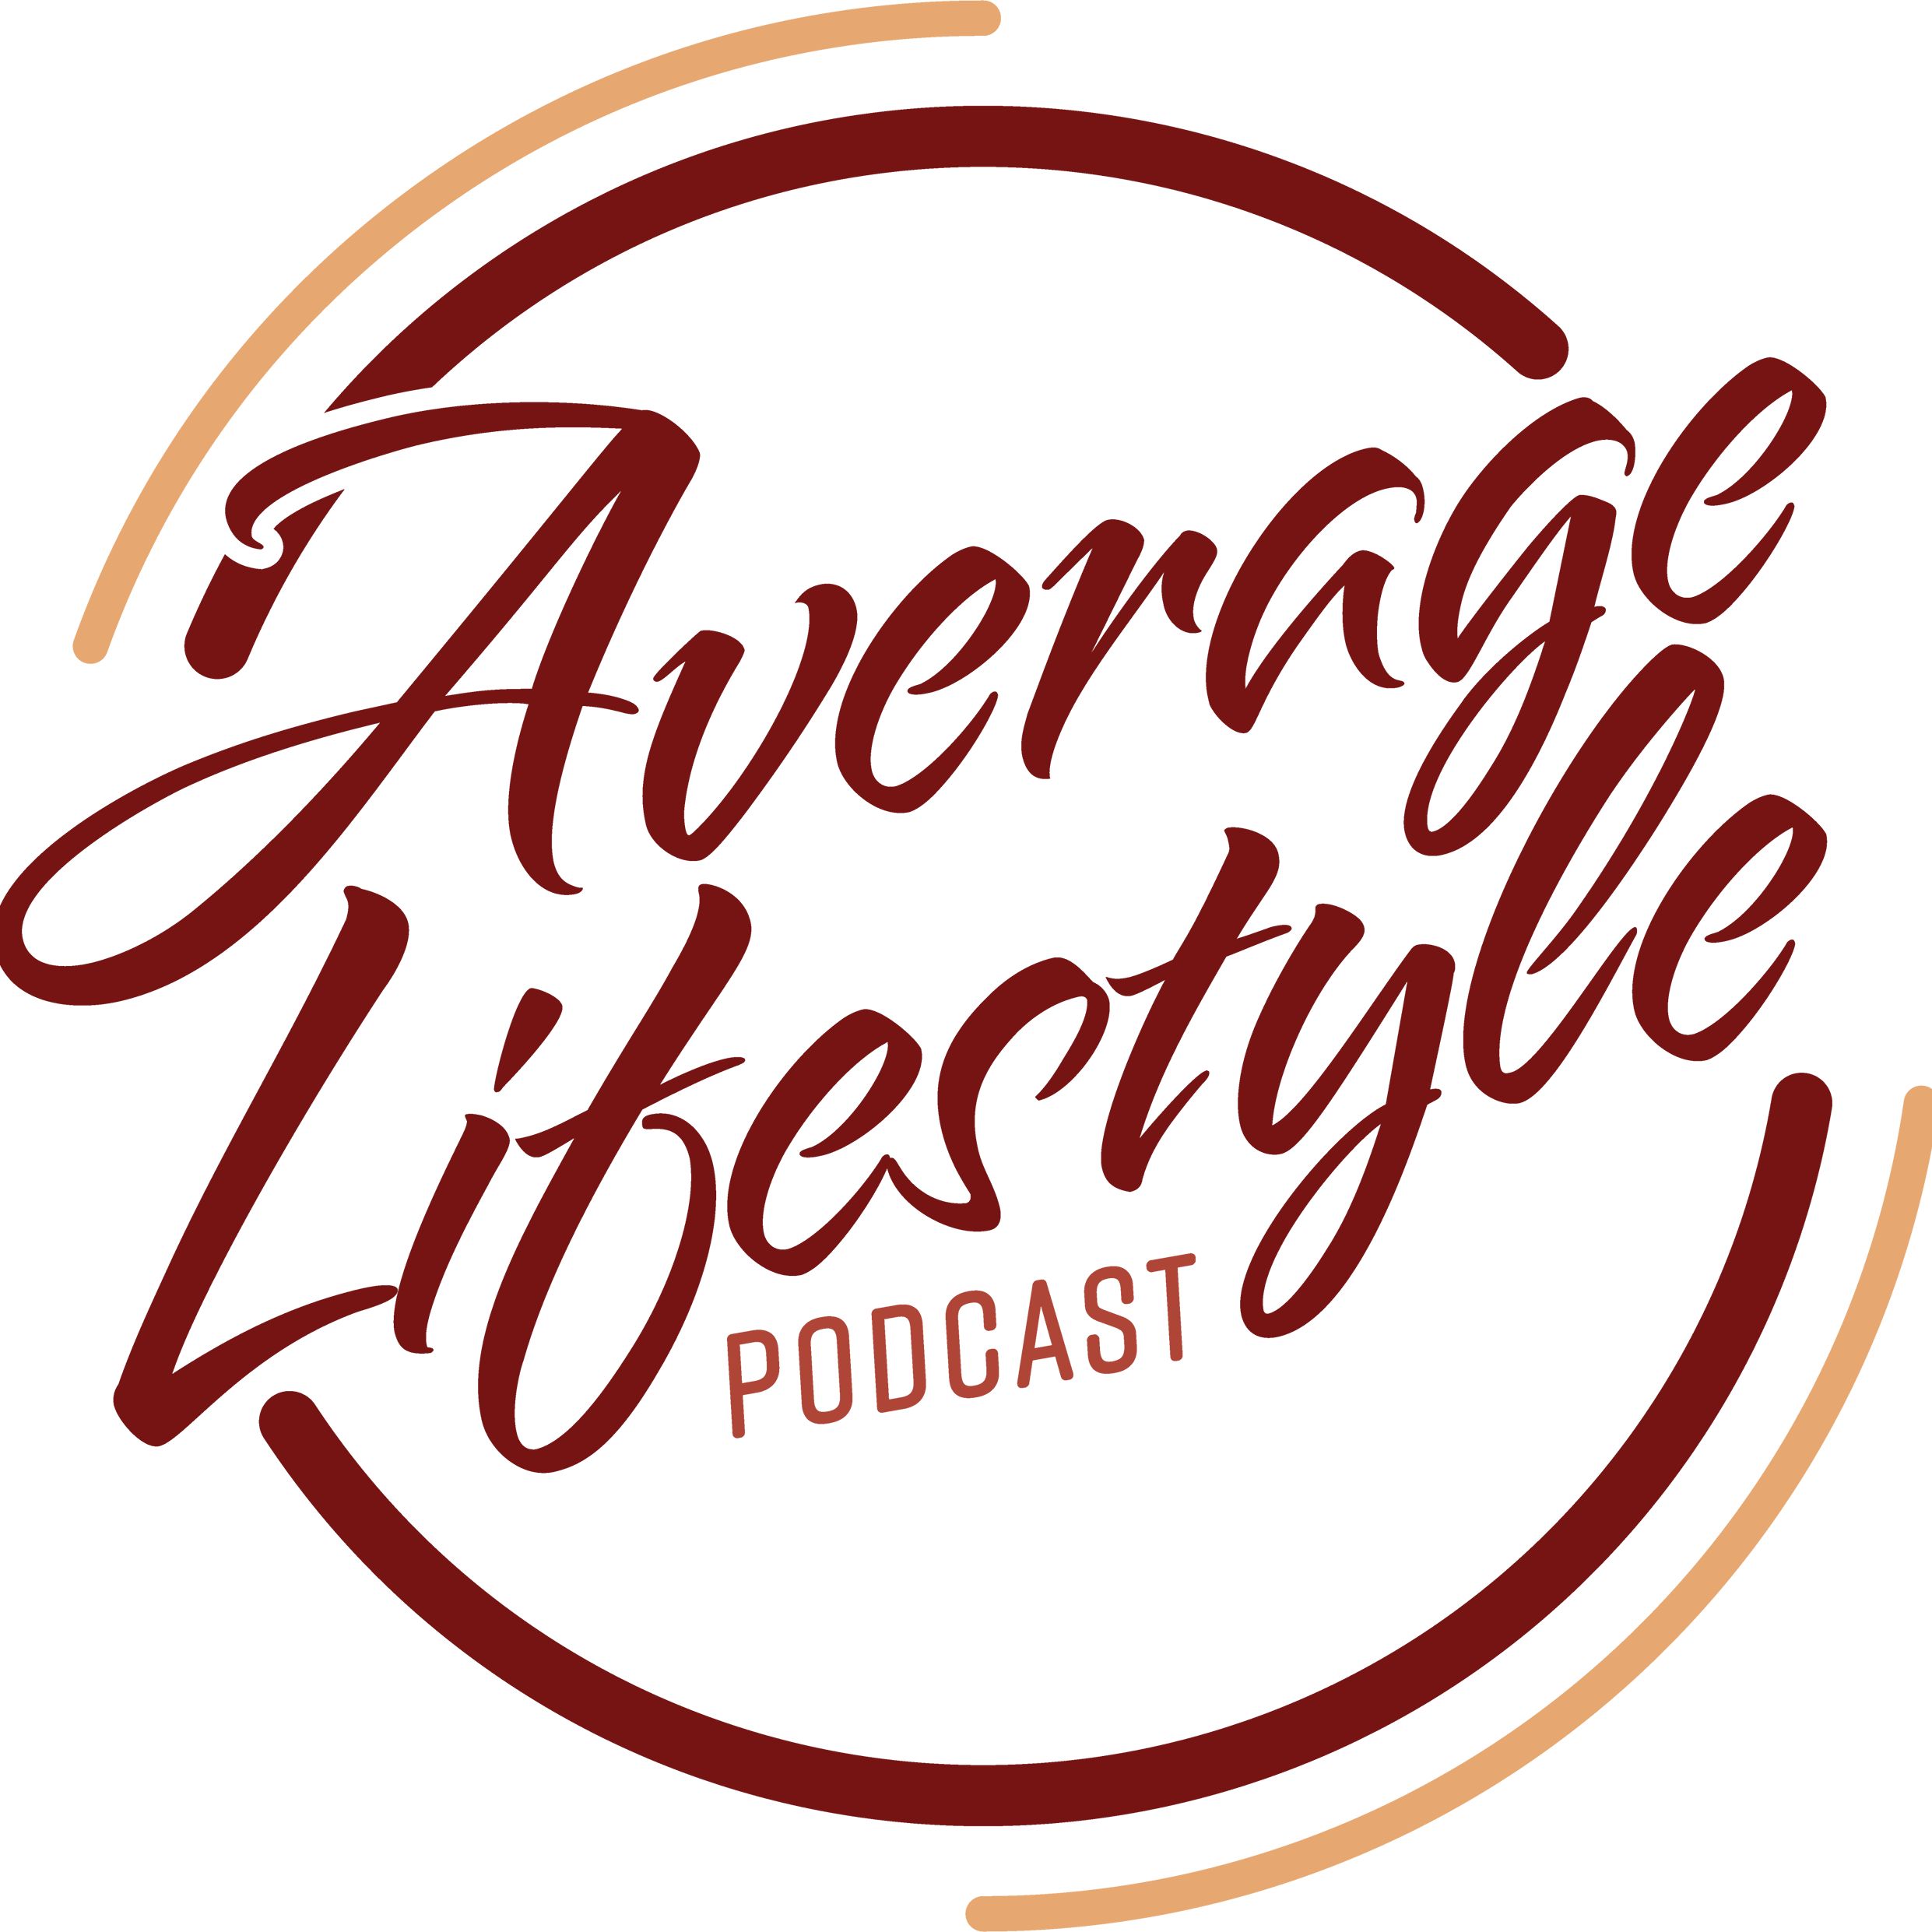 Average Lifestyle Podcast